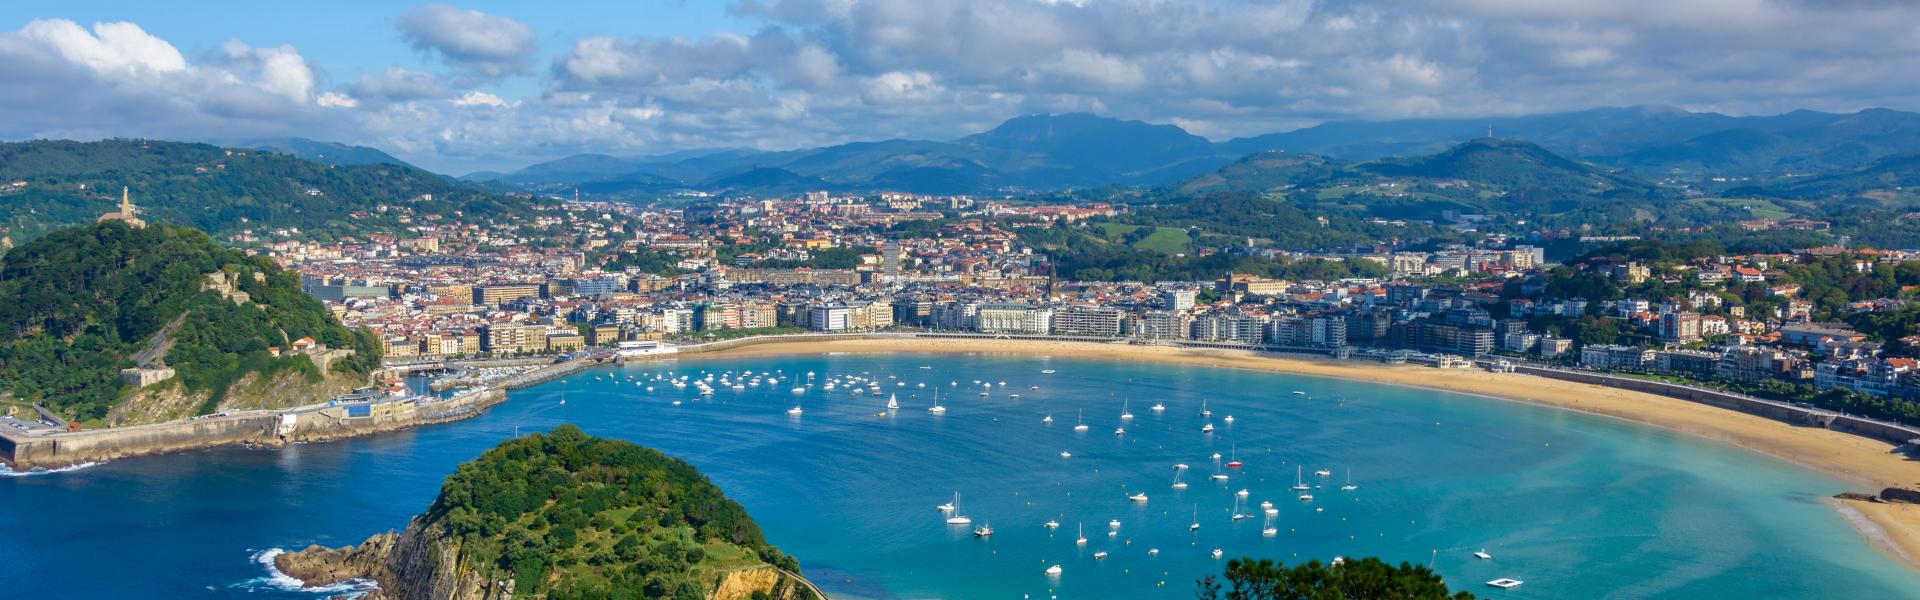 Een vakantiehuis in het Baskenland staat garant voor onvergetelijke herinneringen - Casamundo